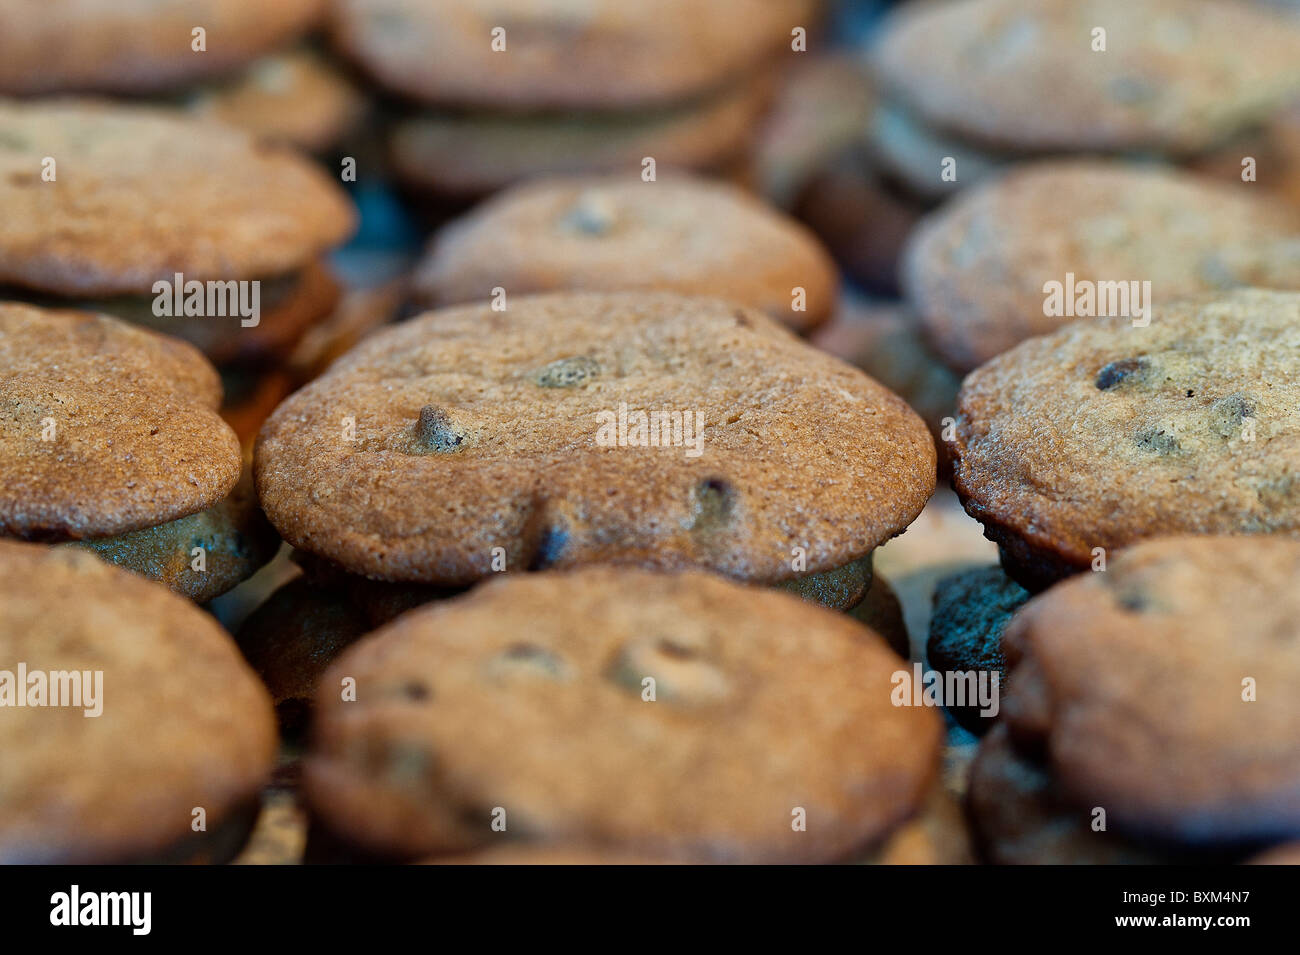 Freshly baked Christmas cookies. Stock Photo